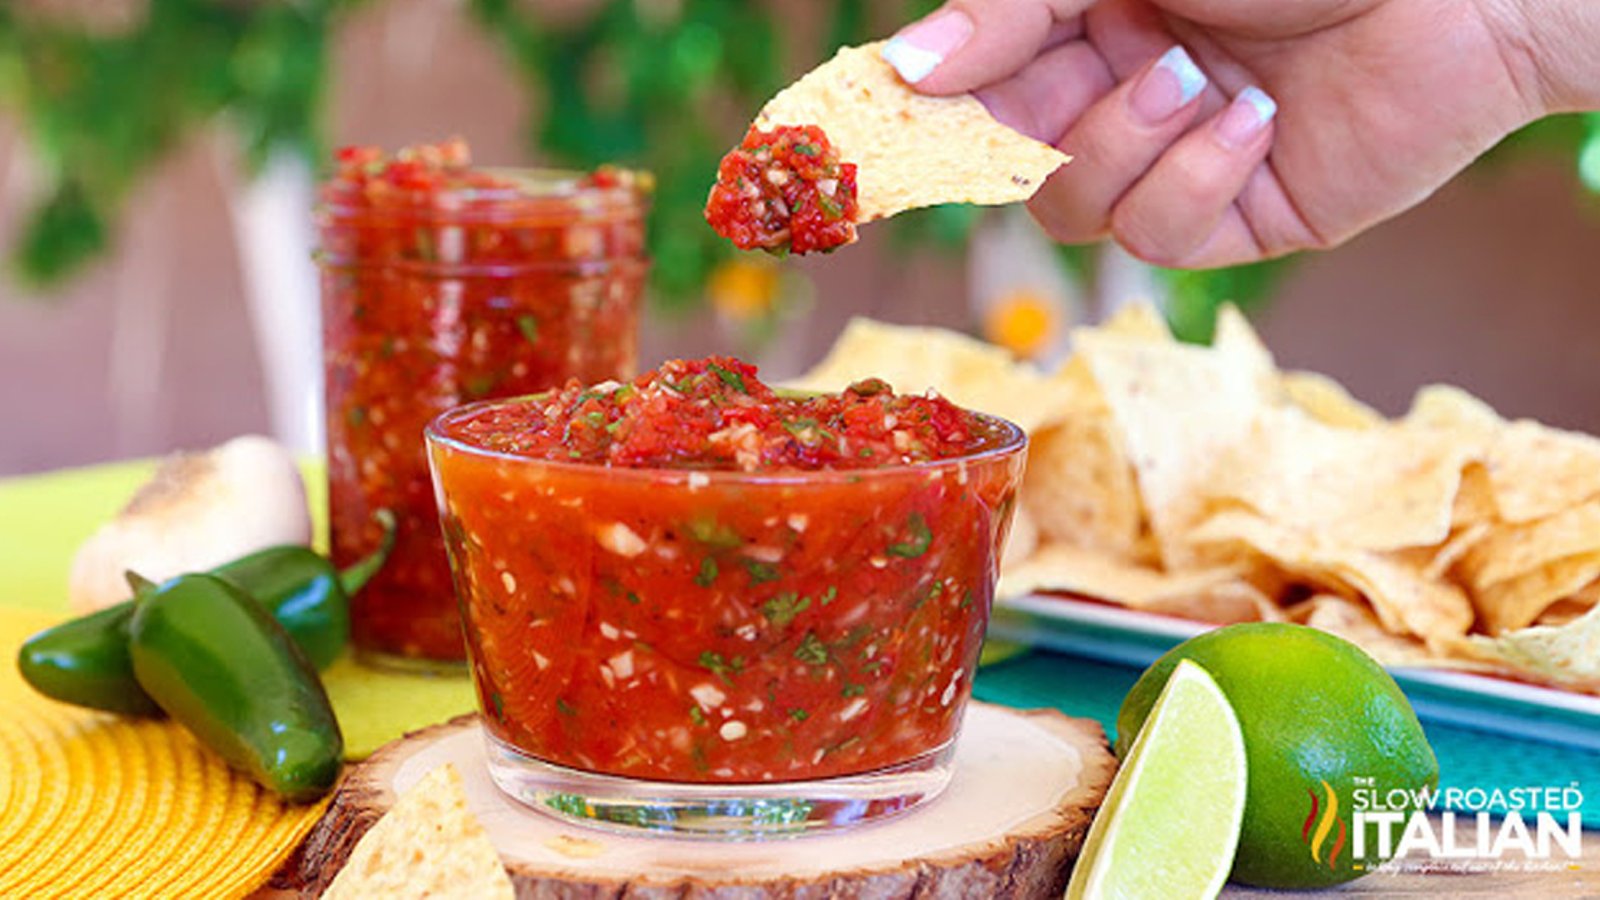 Cette salsa maison a un goût vraiment incroyable